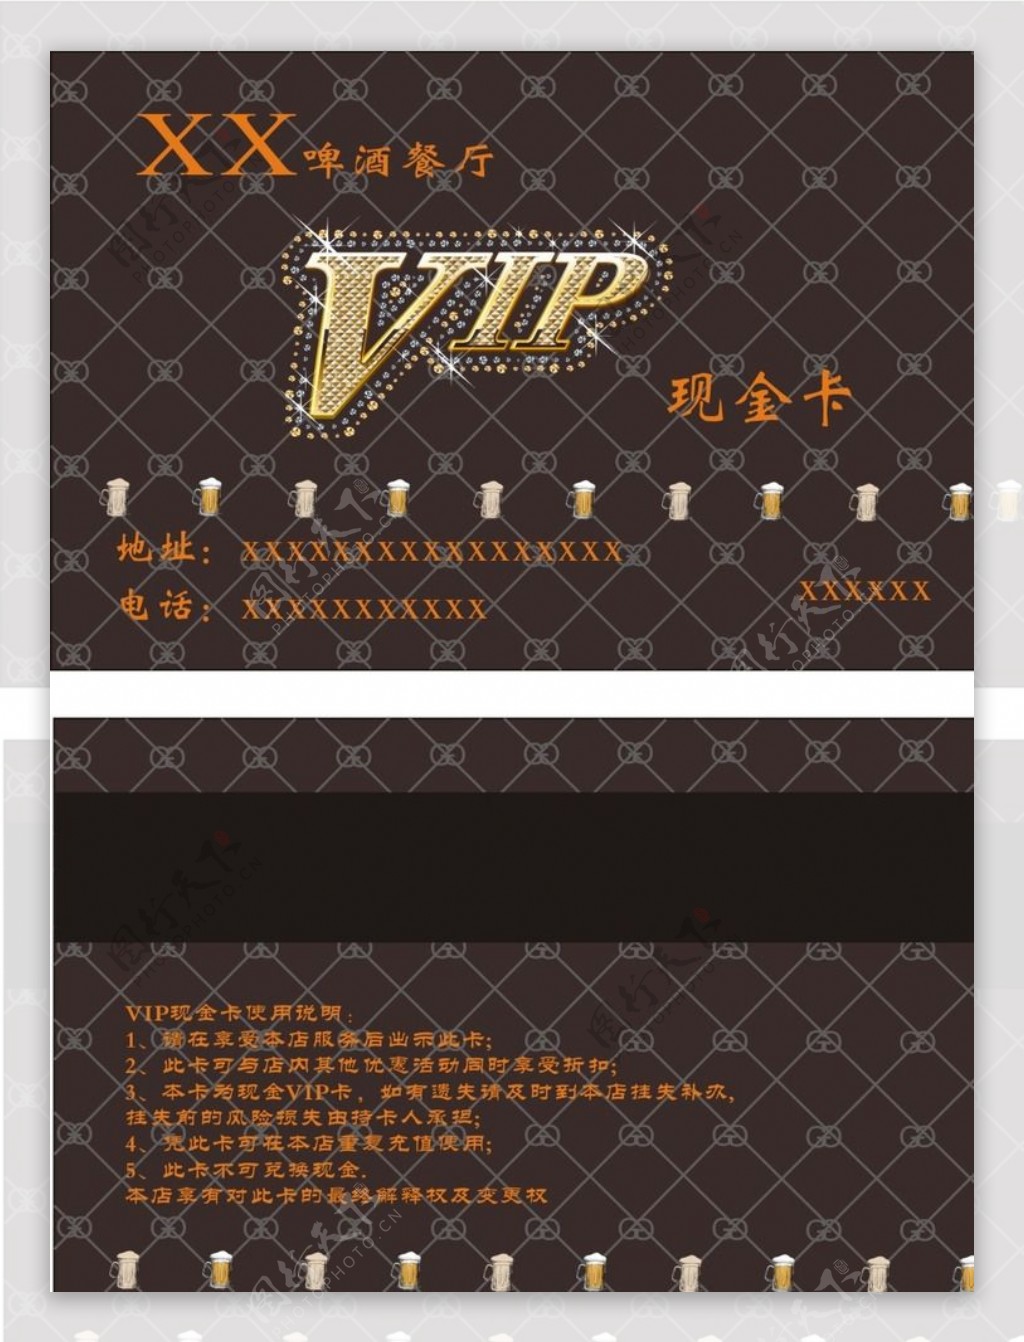 酒庄VIP卡图片